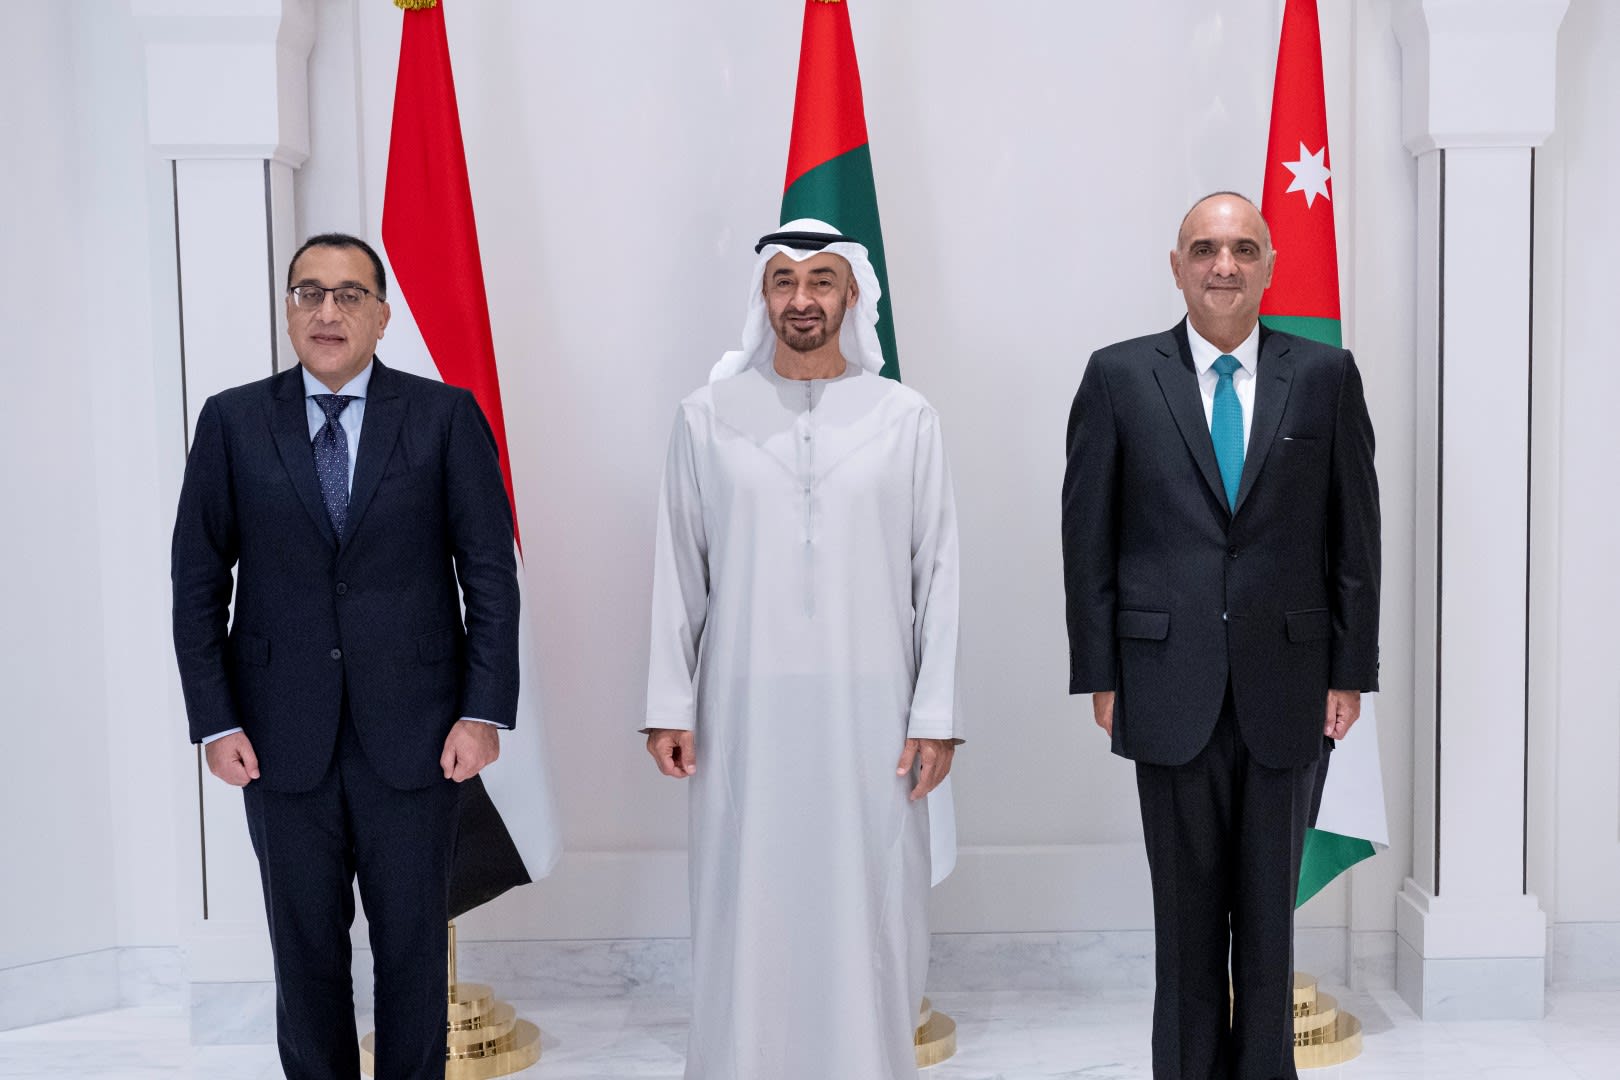 محمد بن زايد يستقبل رئيسي وزراء مصر والأردن قبيل الإعلان عن الشراكة الصناعية بين الدول الثلاث